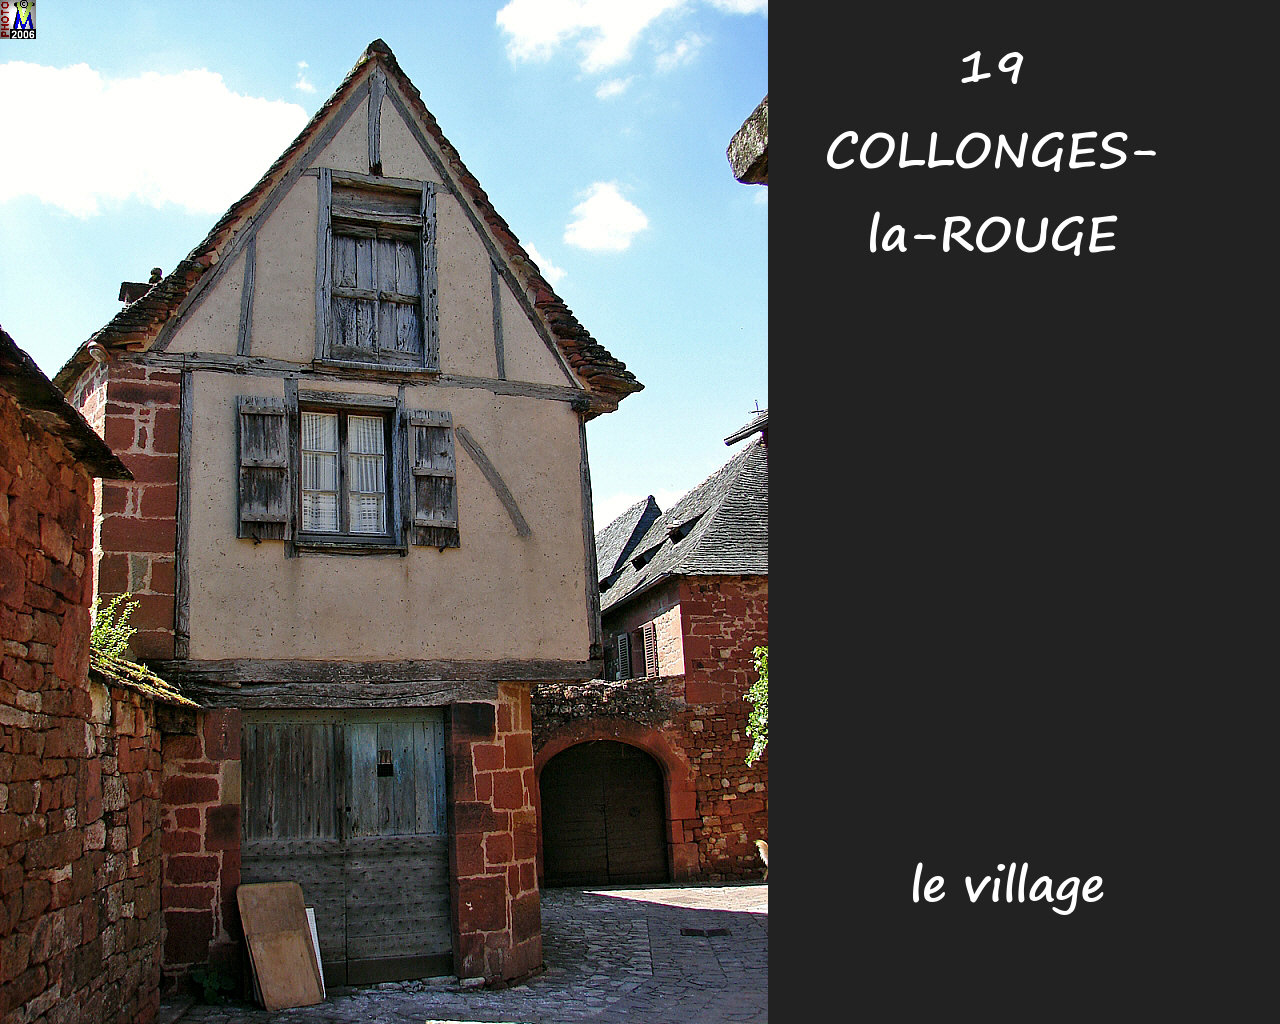 19COLLONGES-ROUGE_village_190.jpg